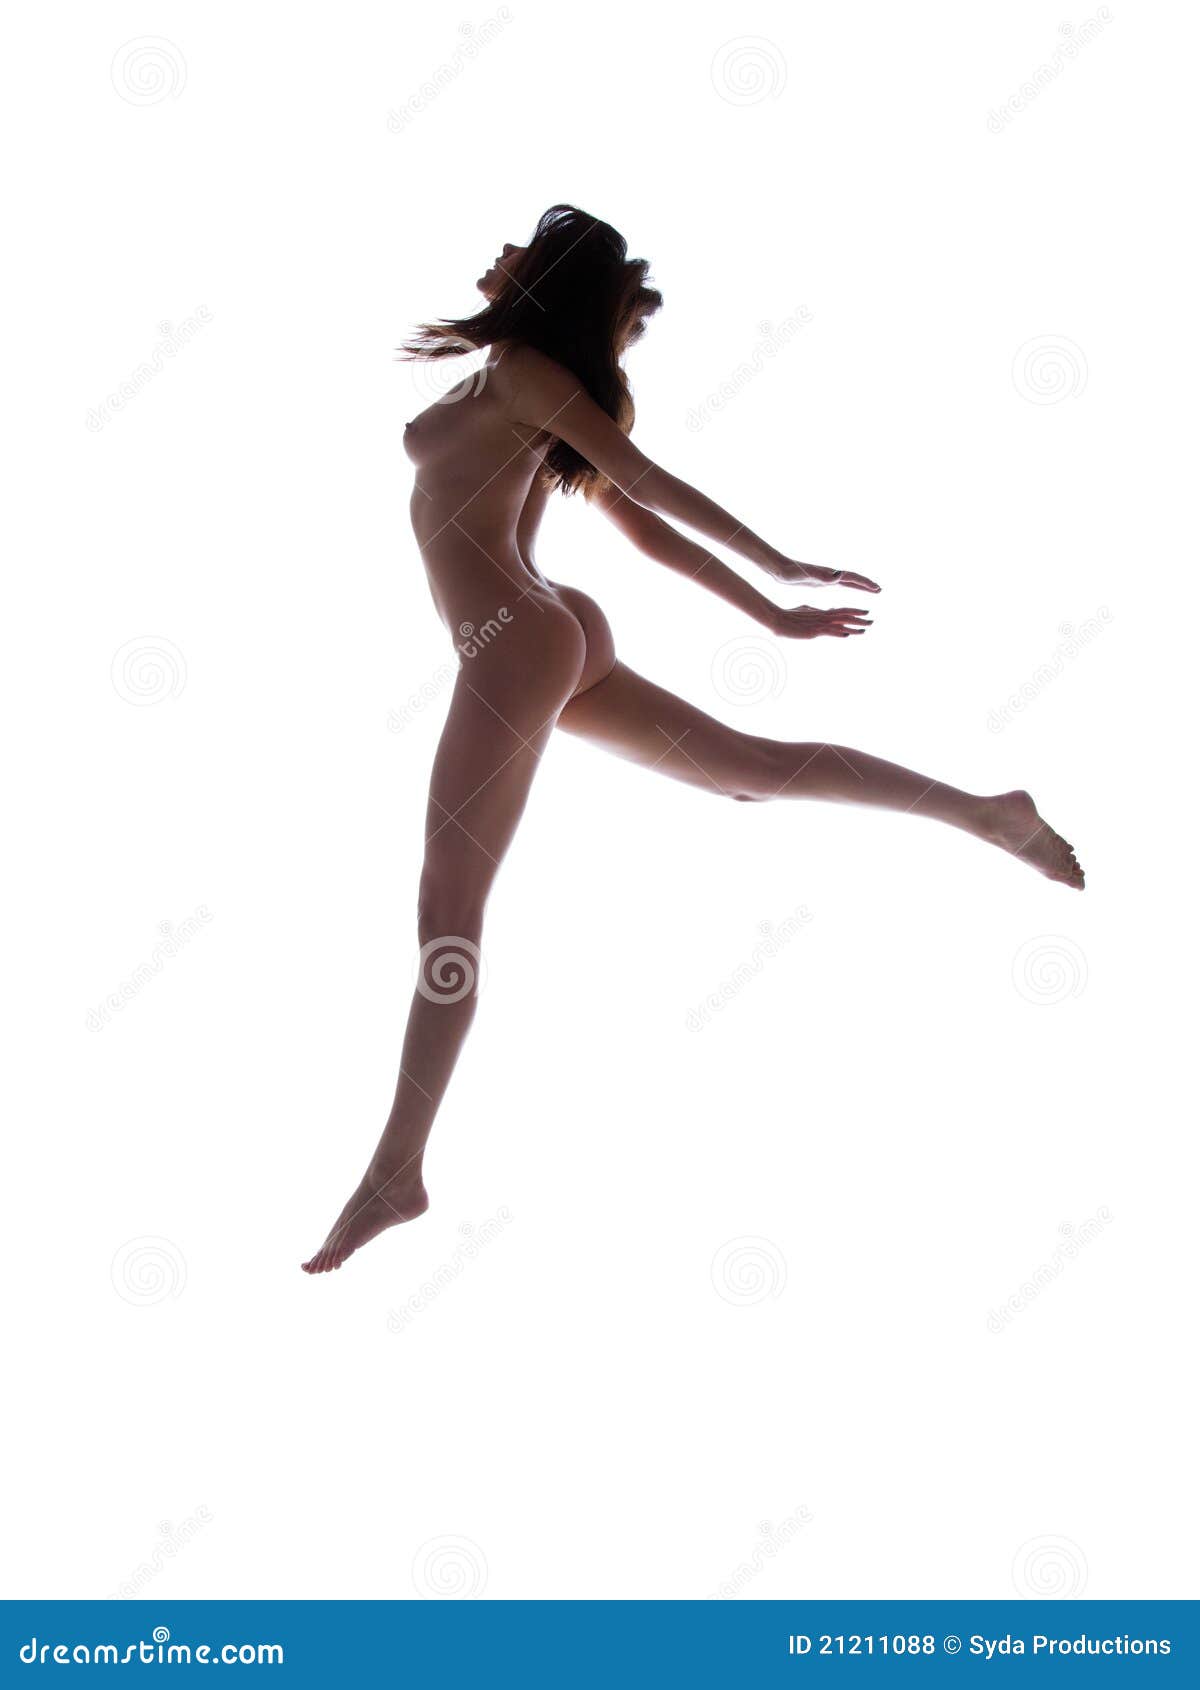 Nude Women Dancing 103